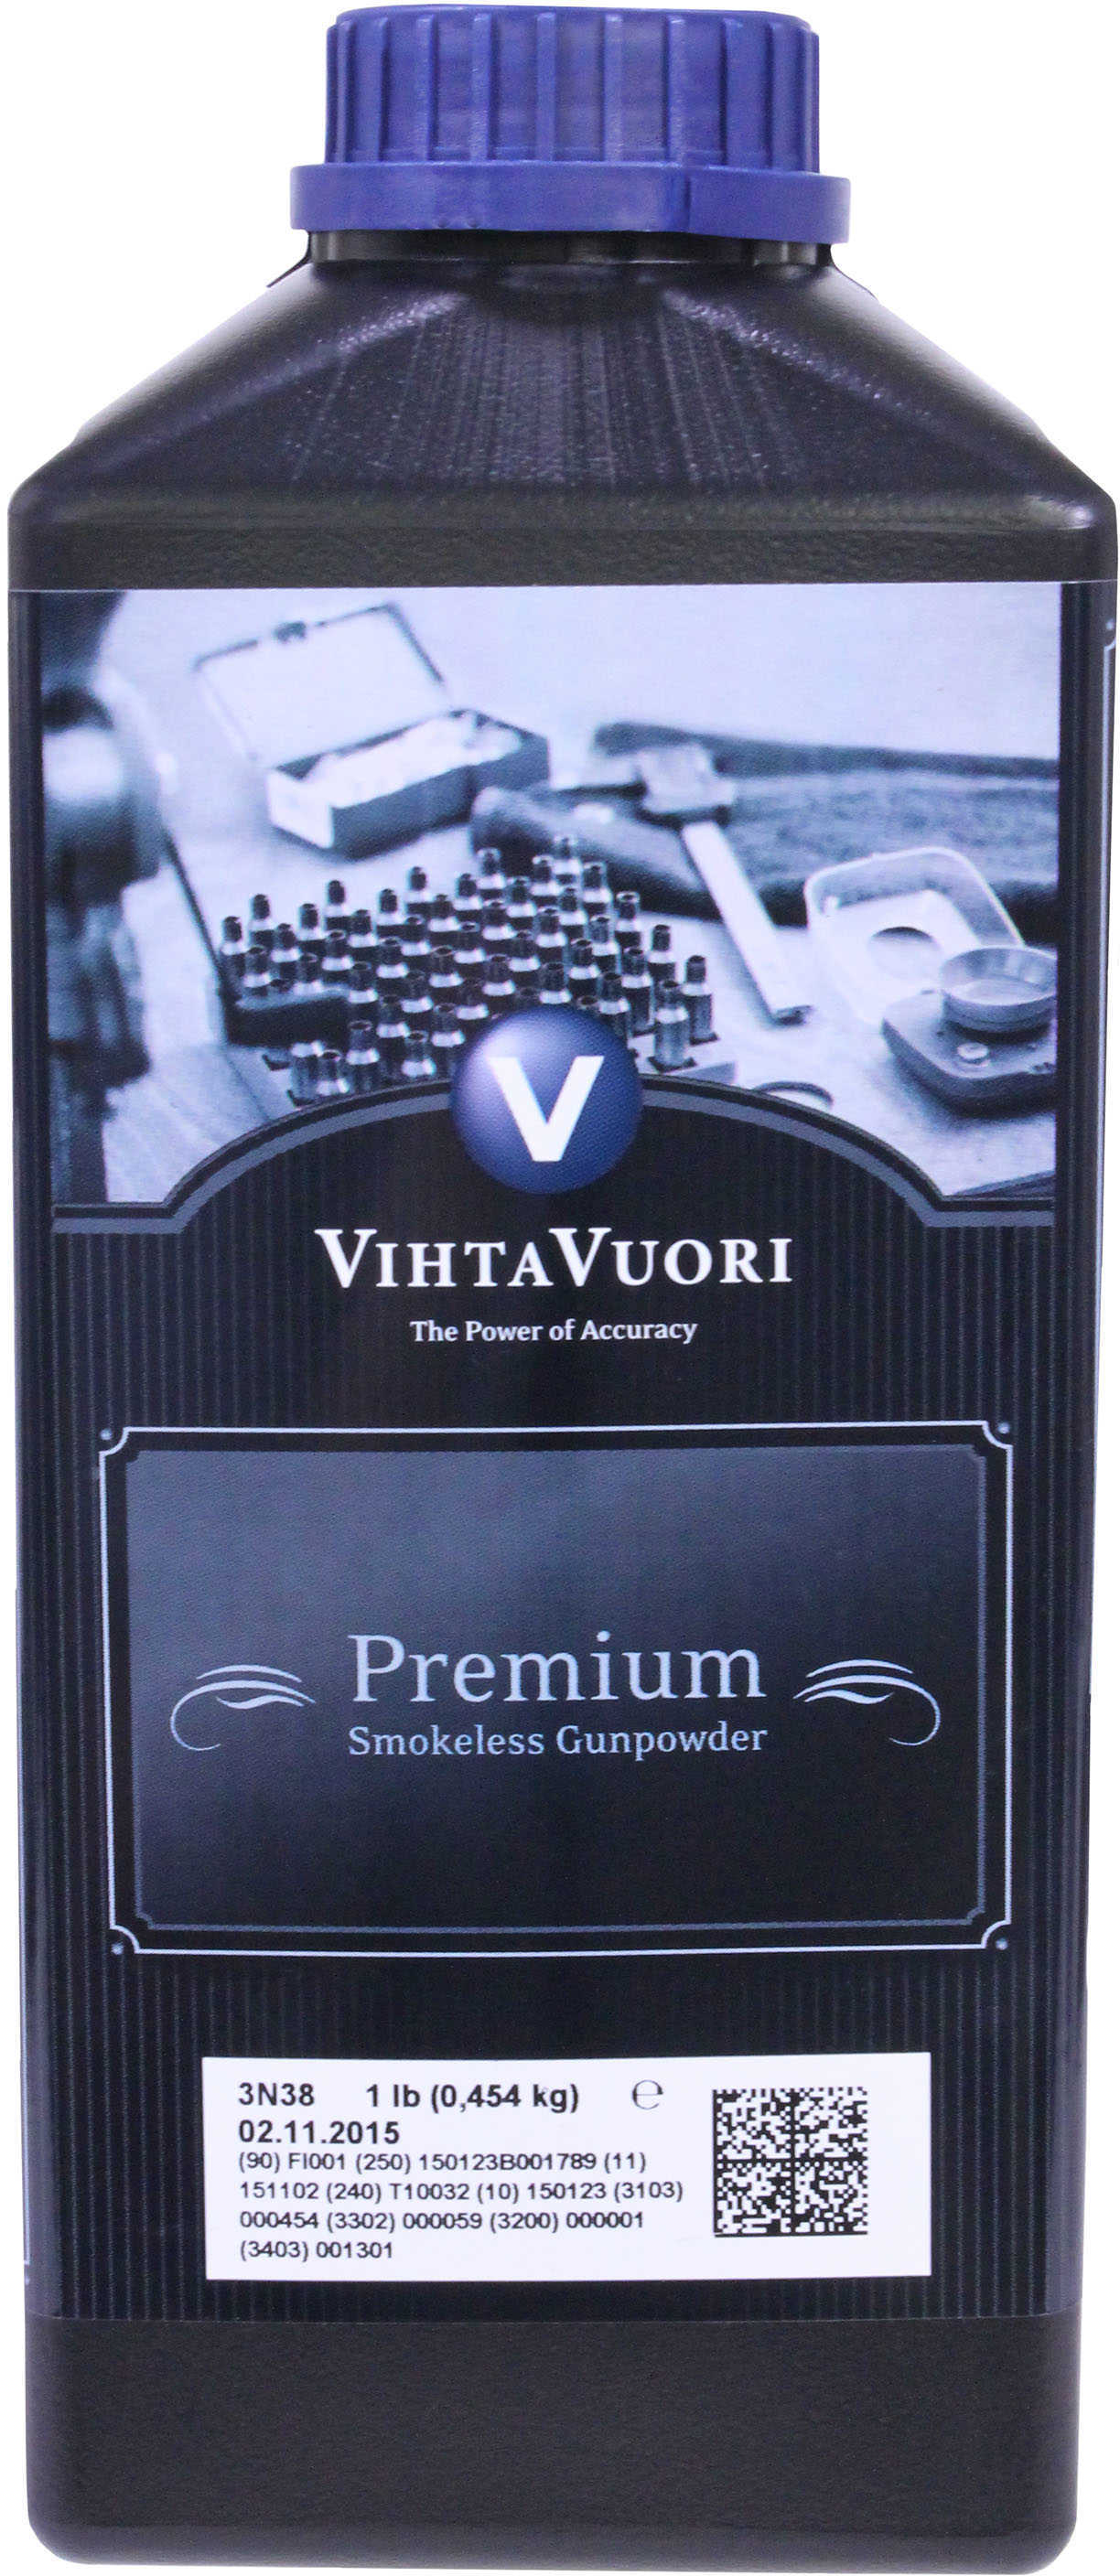 VihtaVuori 3N38 Smokeless Pistol Powder 1 Lb